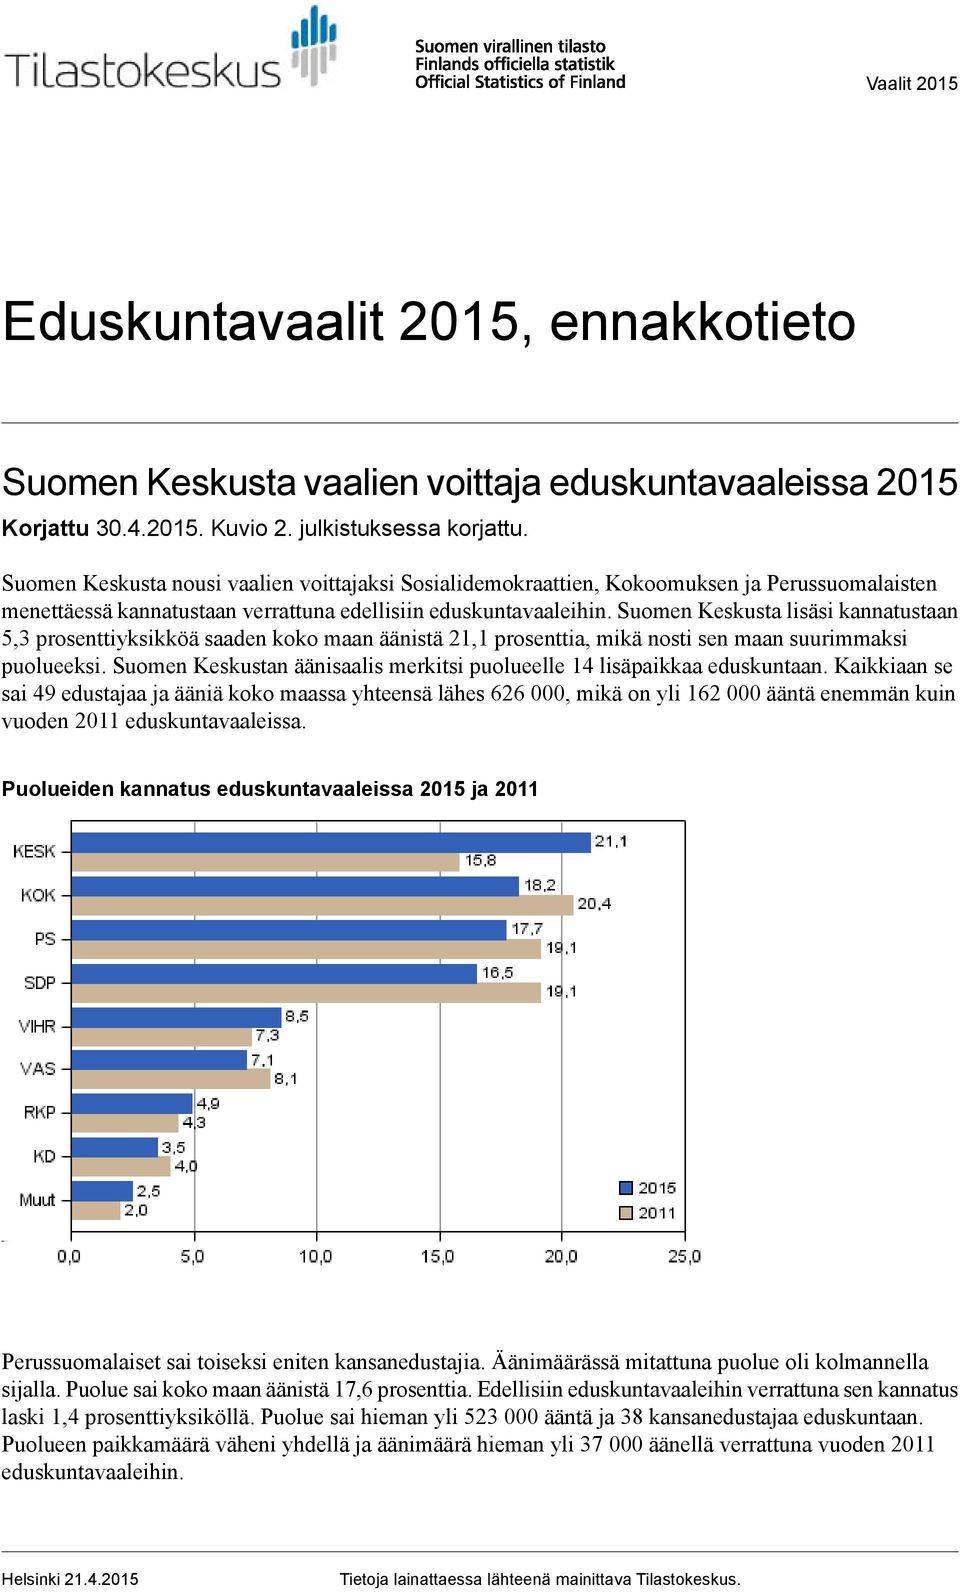 Suomen Keskusta lisäsi kannatustaan 5,3 prosenttiyksikköä saaden koko maan äänistä 21,1 prosenttia, mikä nosti sen maan suurimmaksi puolueeksi.